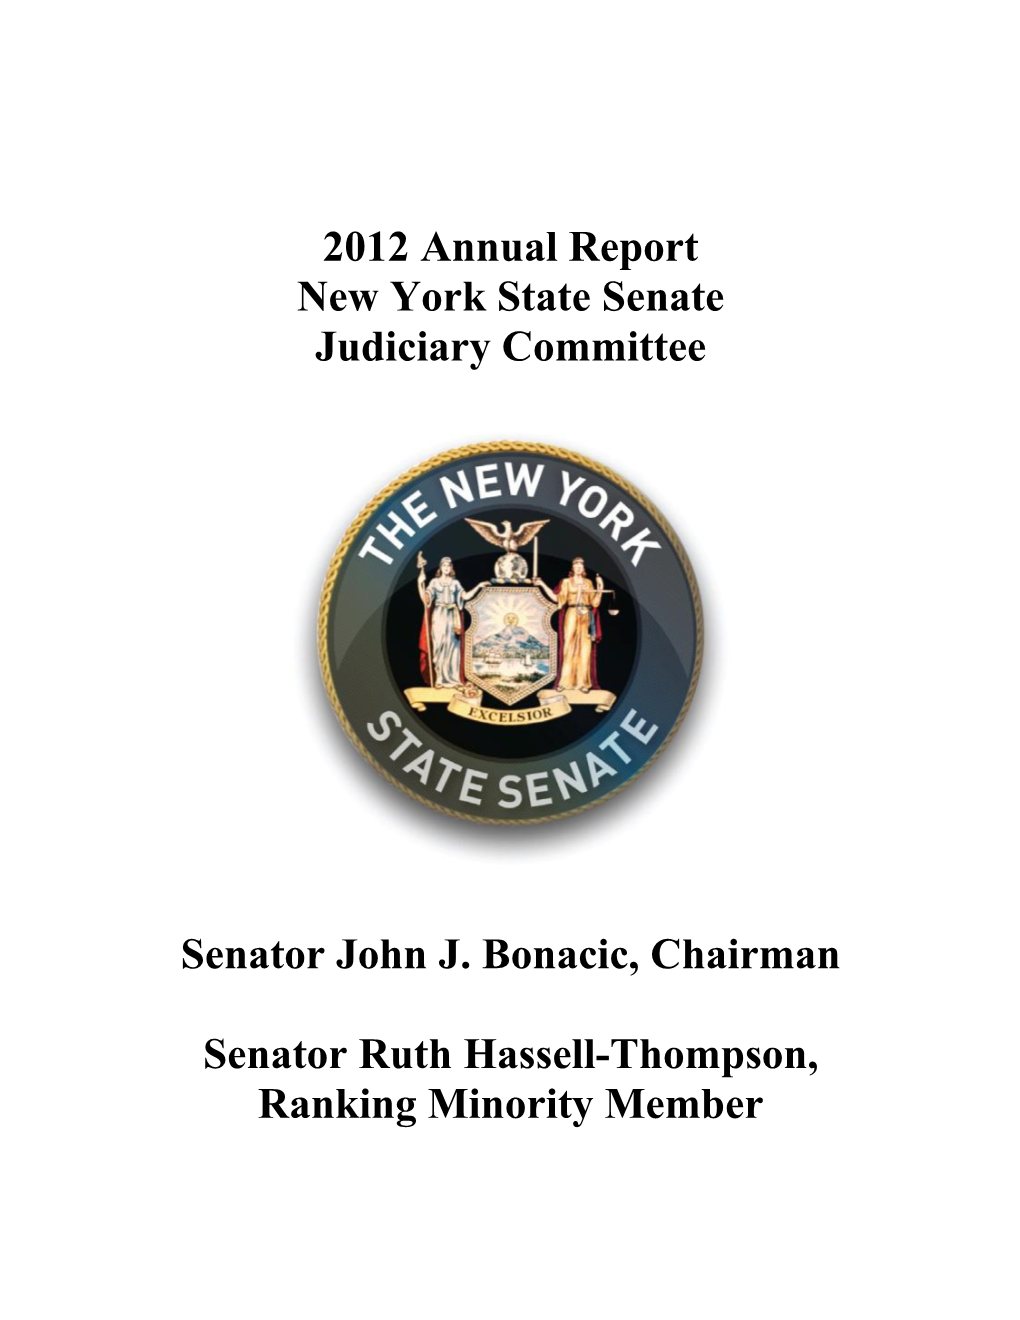 2012 Annual Report of the Senate